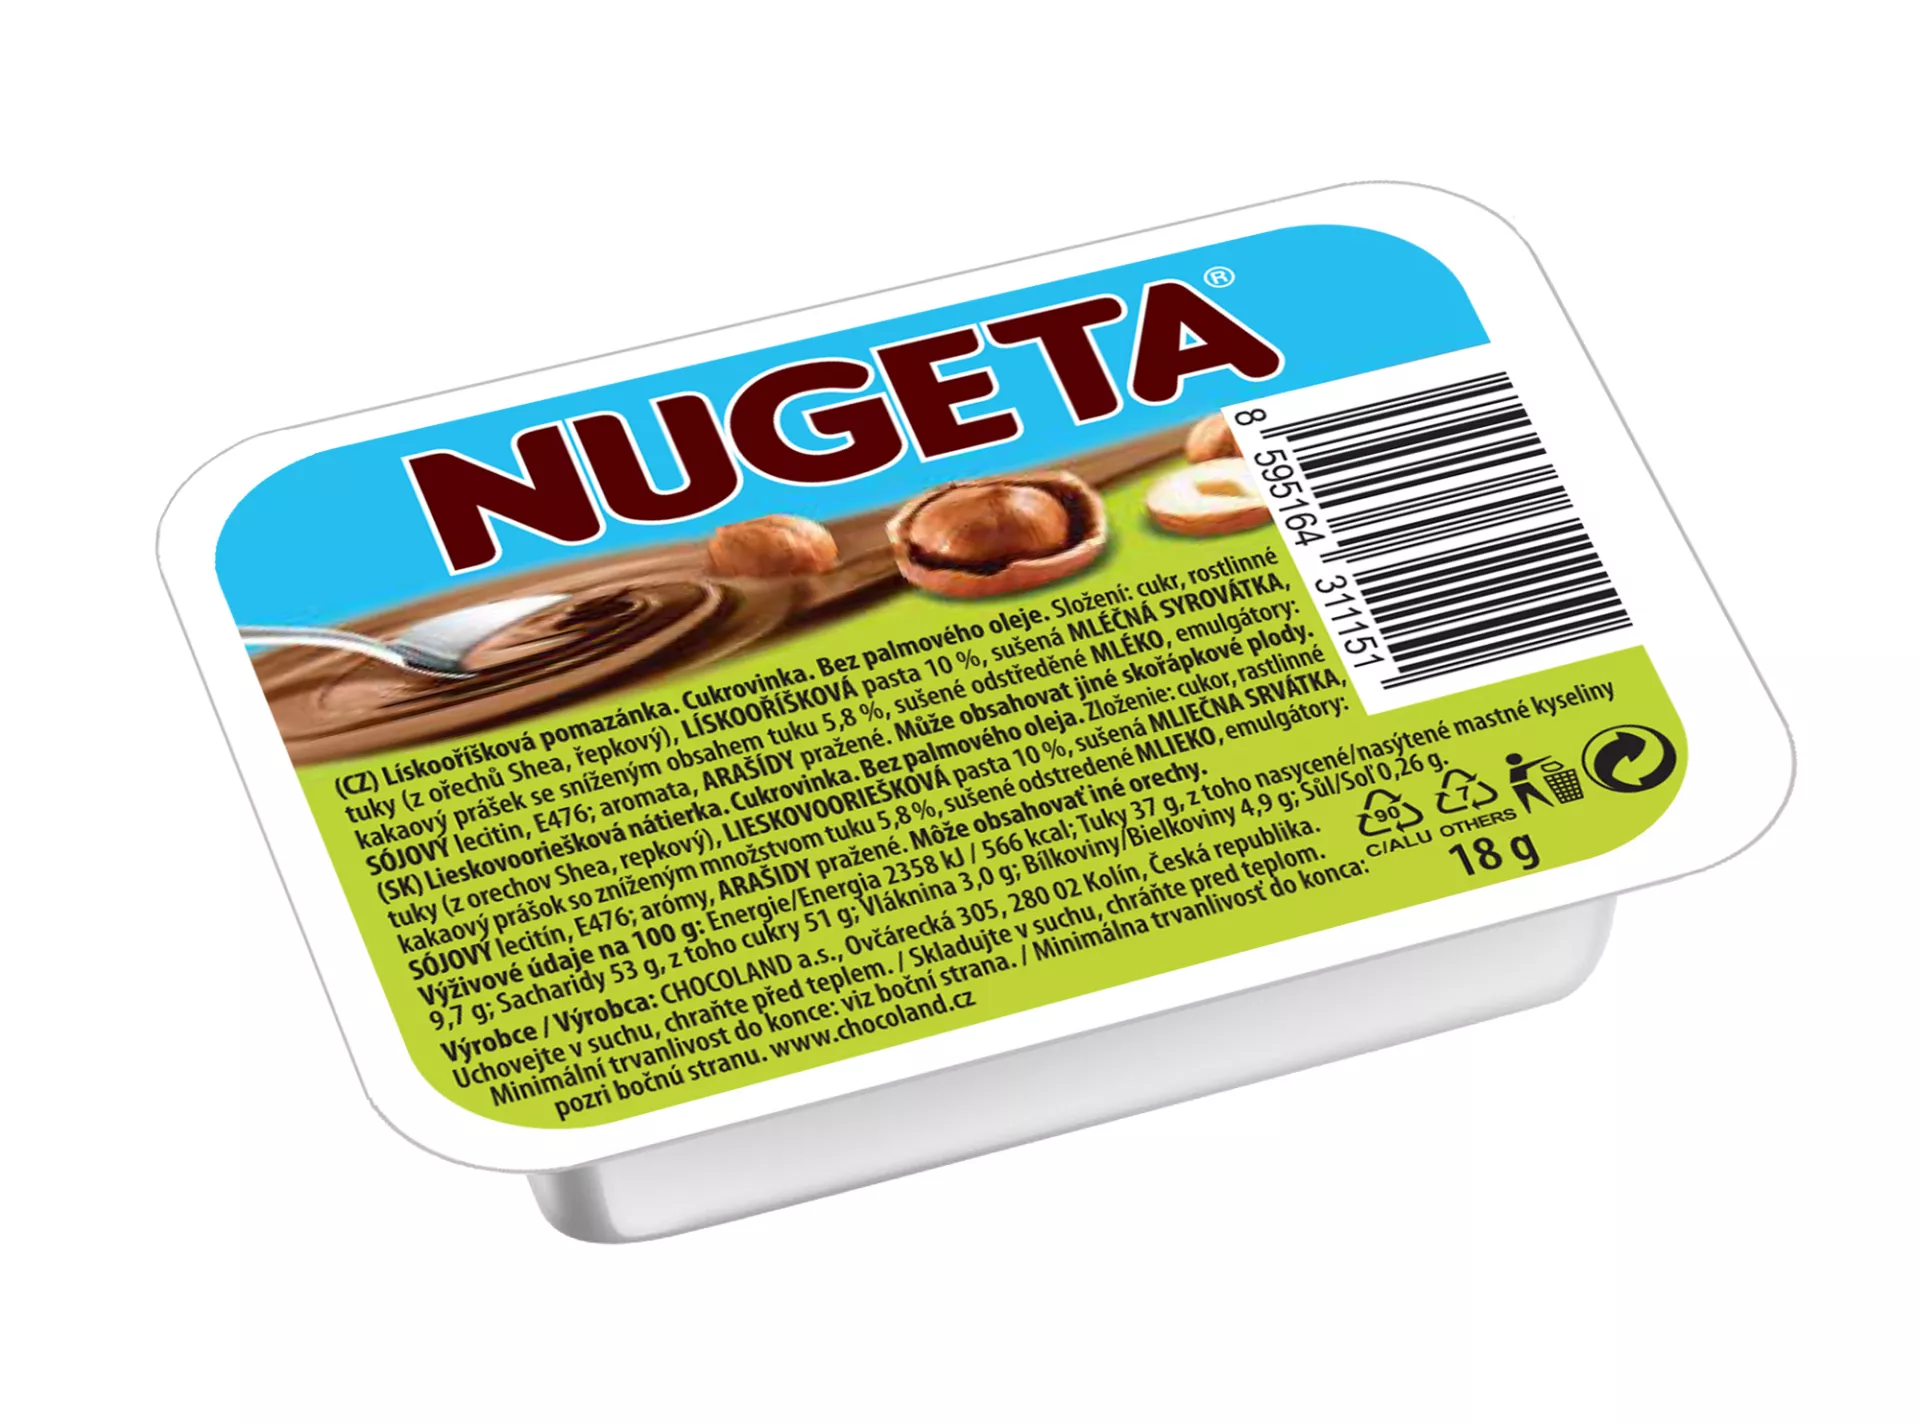 Nugeta 10% hazelnut palm oil free 18g